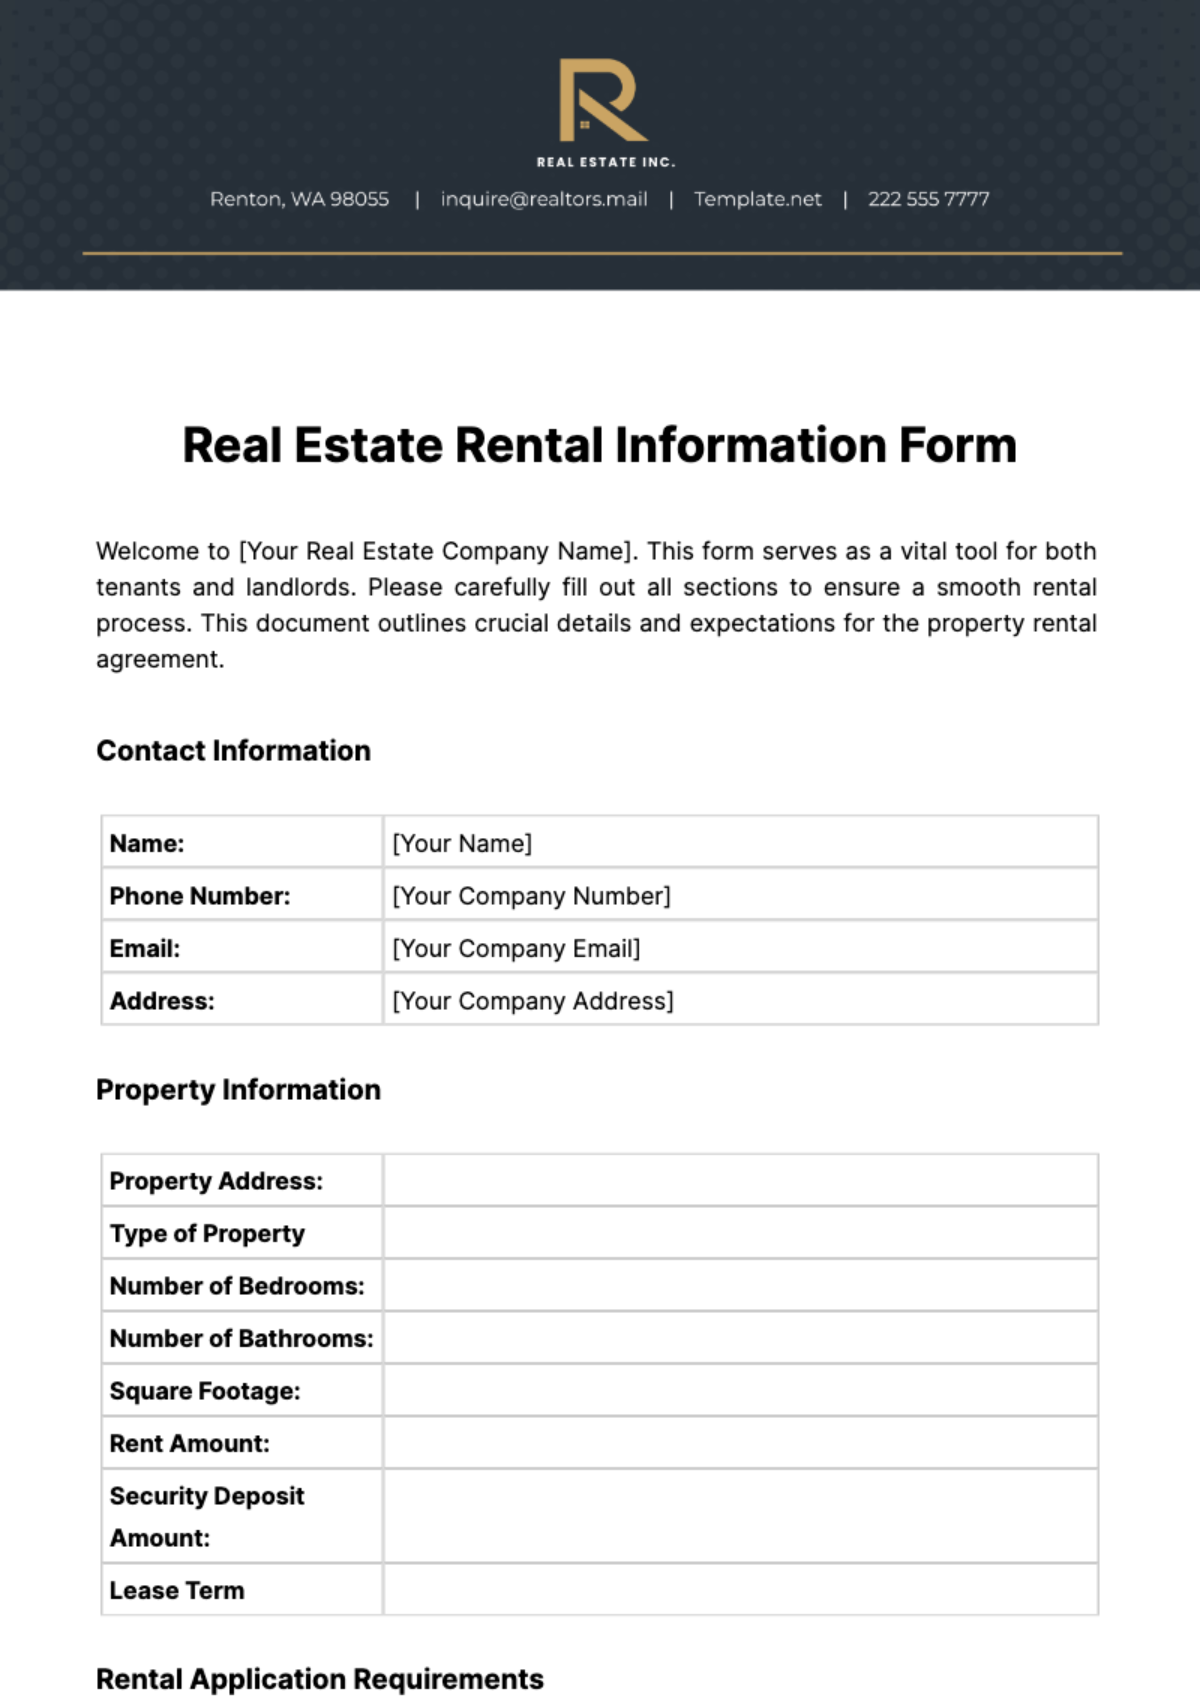 Real Estate Rental Information Form Template